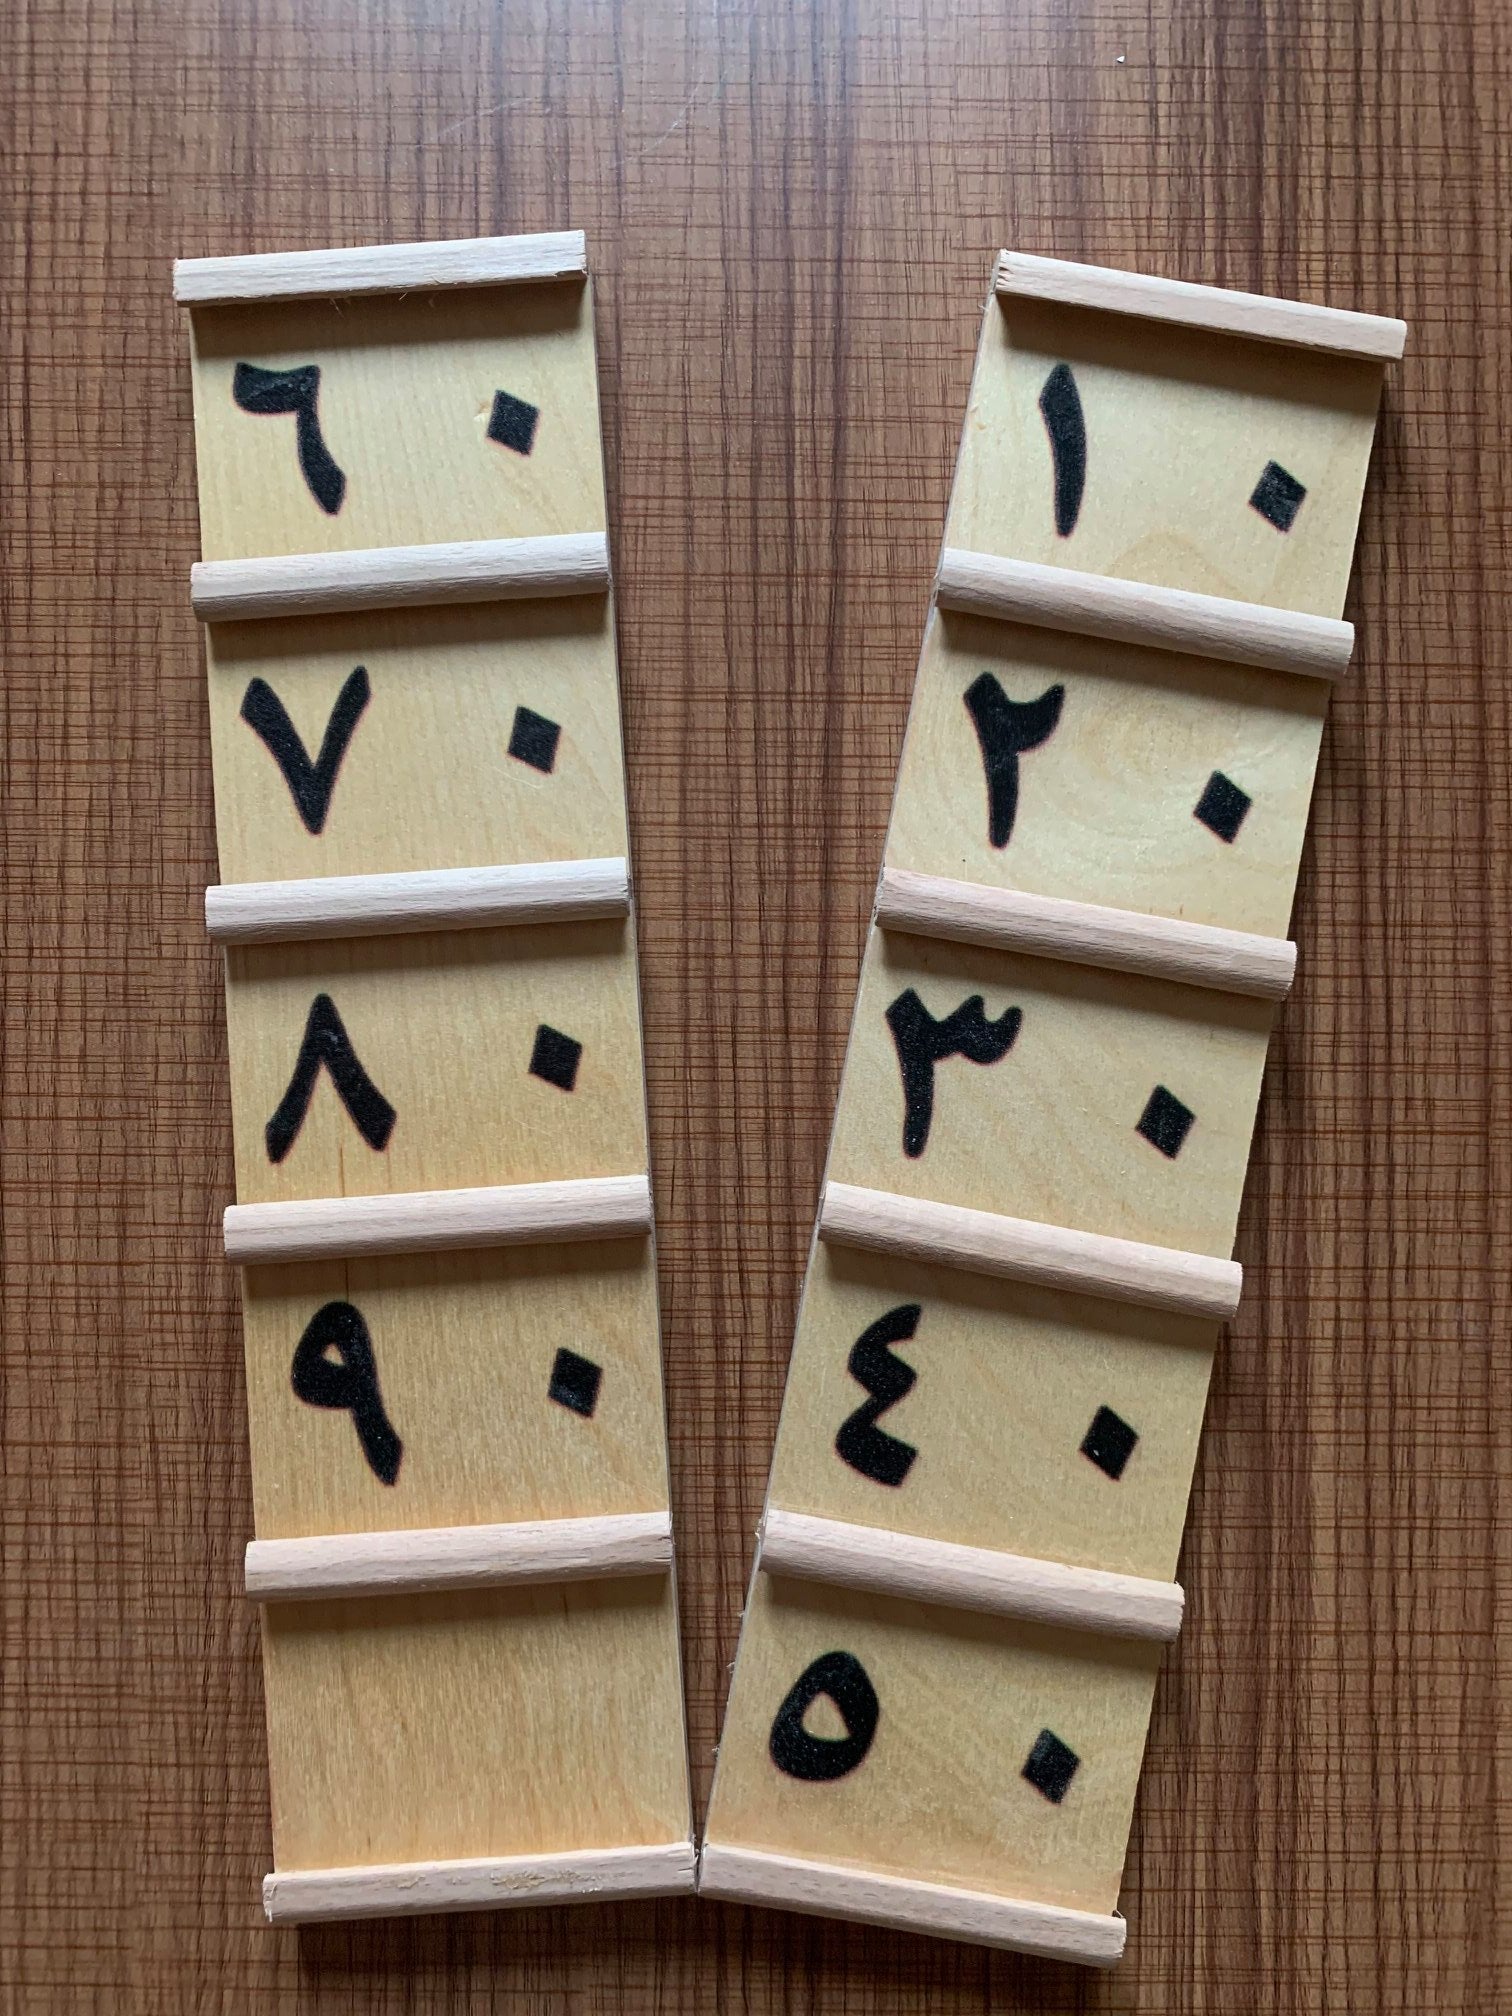 Seguin Board (Tens) in Arabic - لوحة سيجوين (العشرات) بالعربي